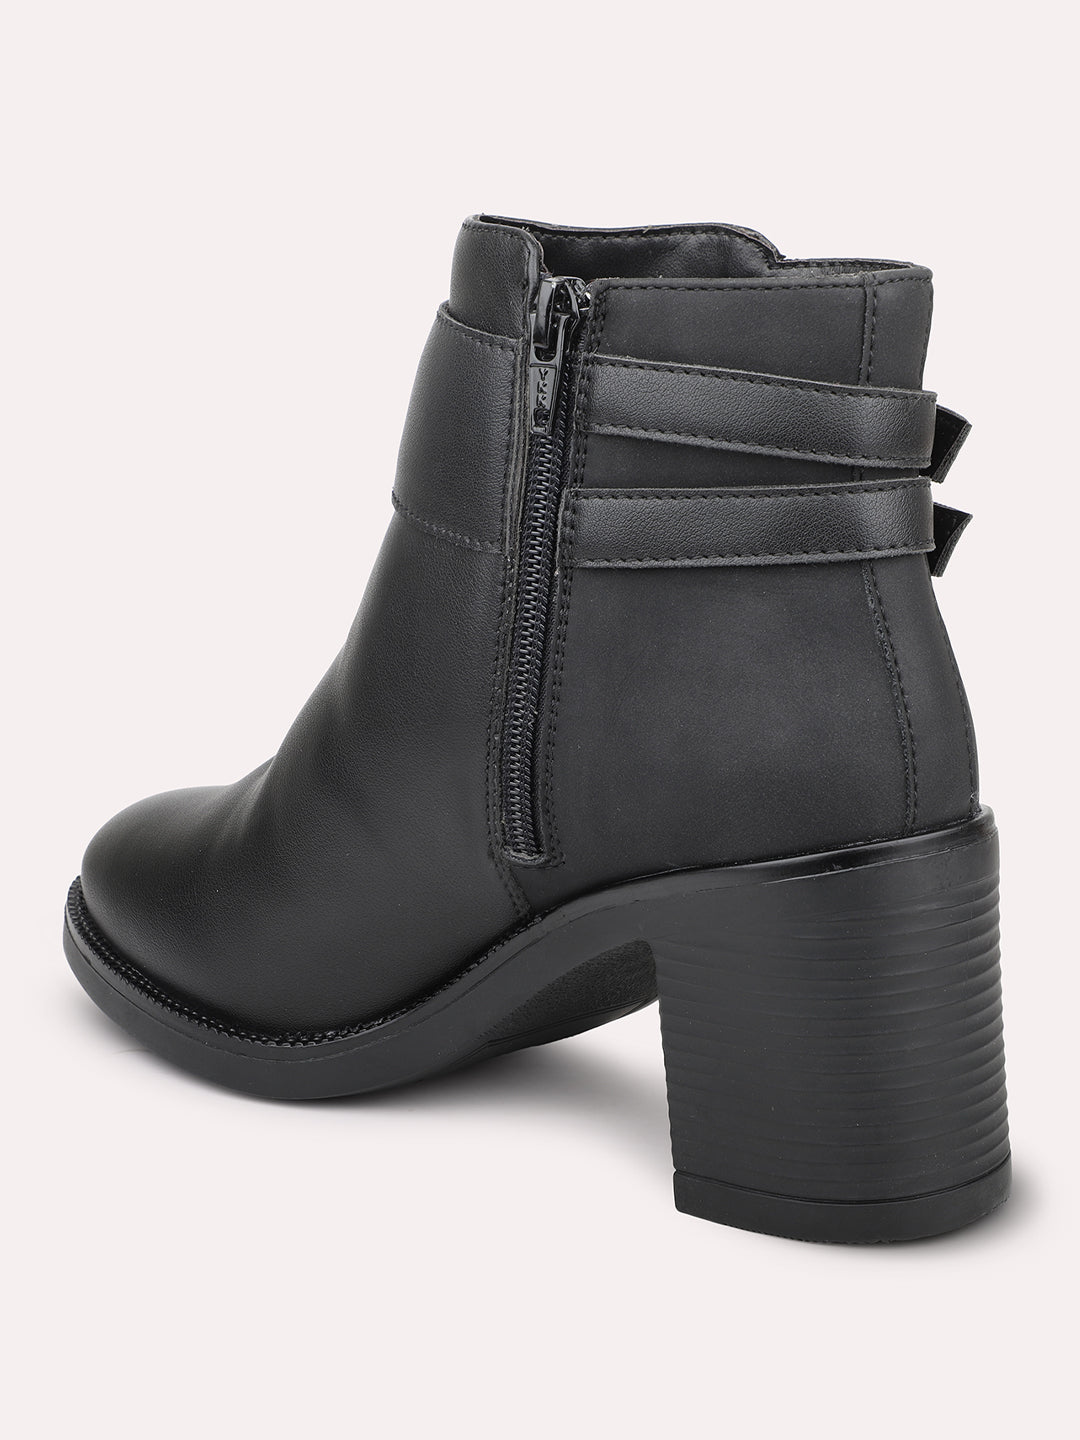 Women Black Block Heel Boots With Buckle Detail